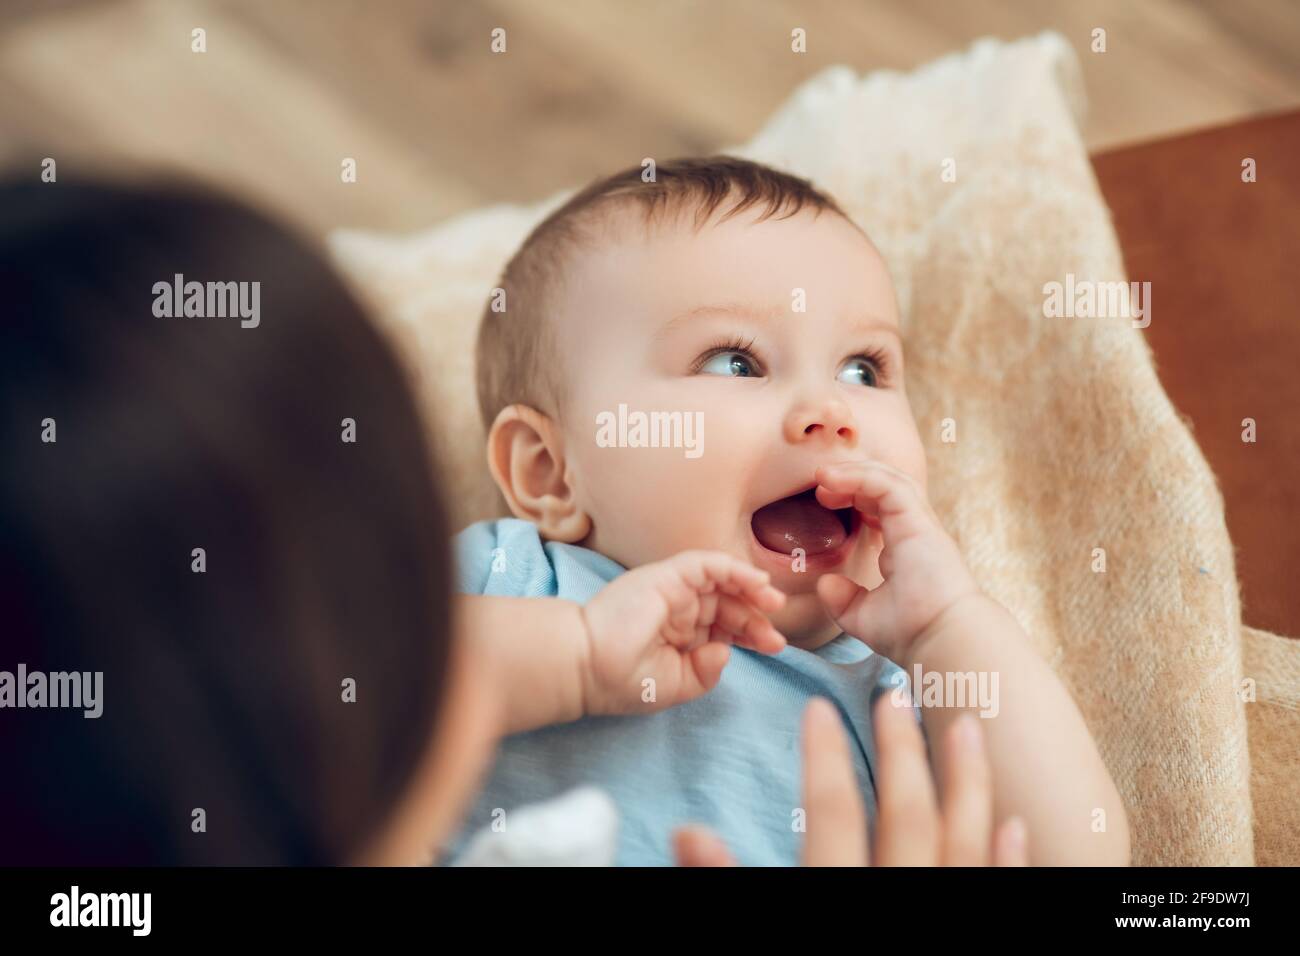 Gros plan sur le visage d'un bébé mignon avec une bouche ouverte Banque D'Images